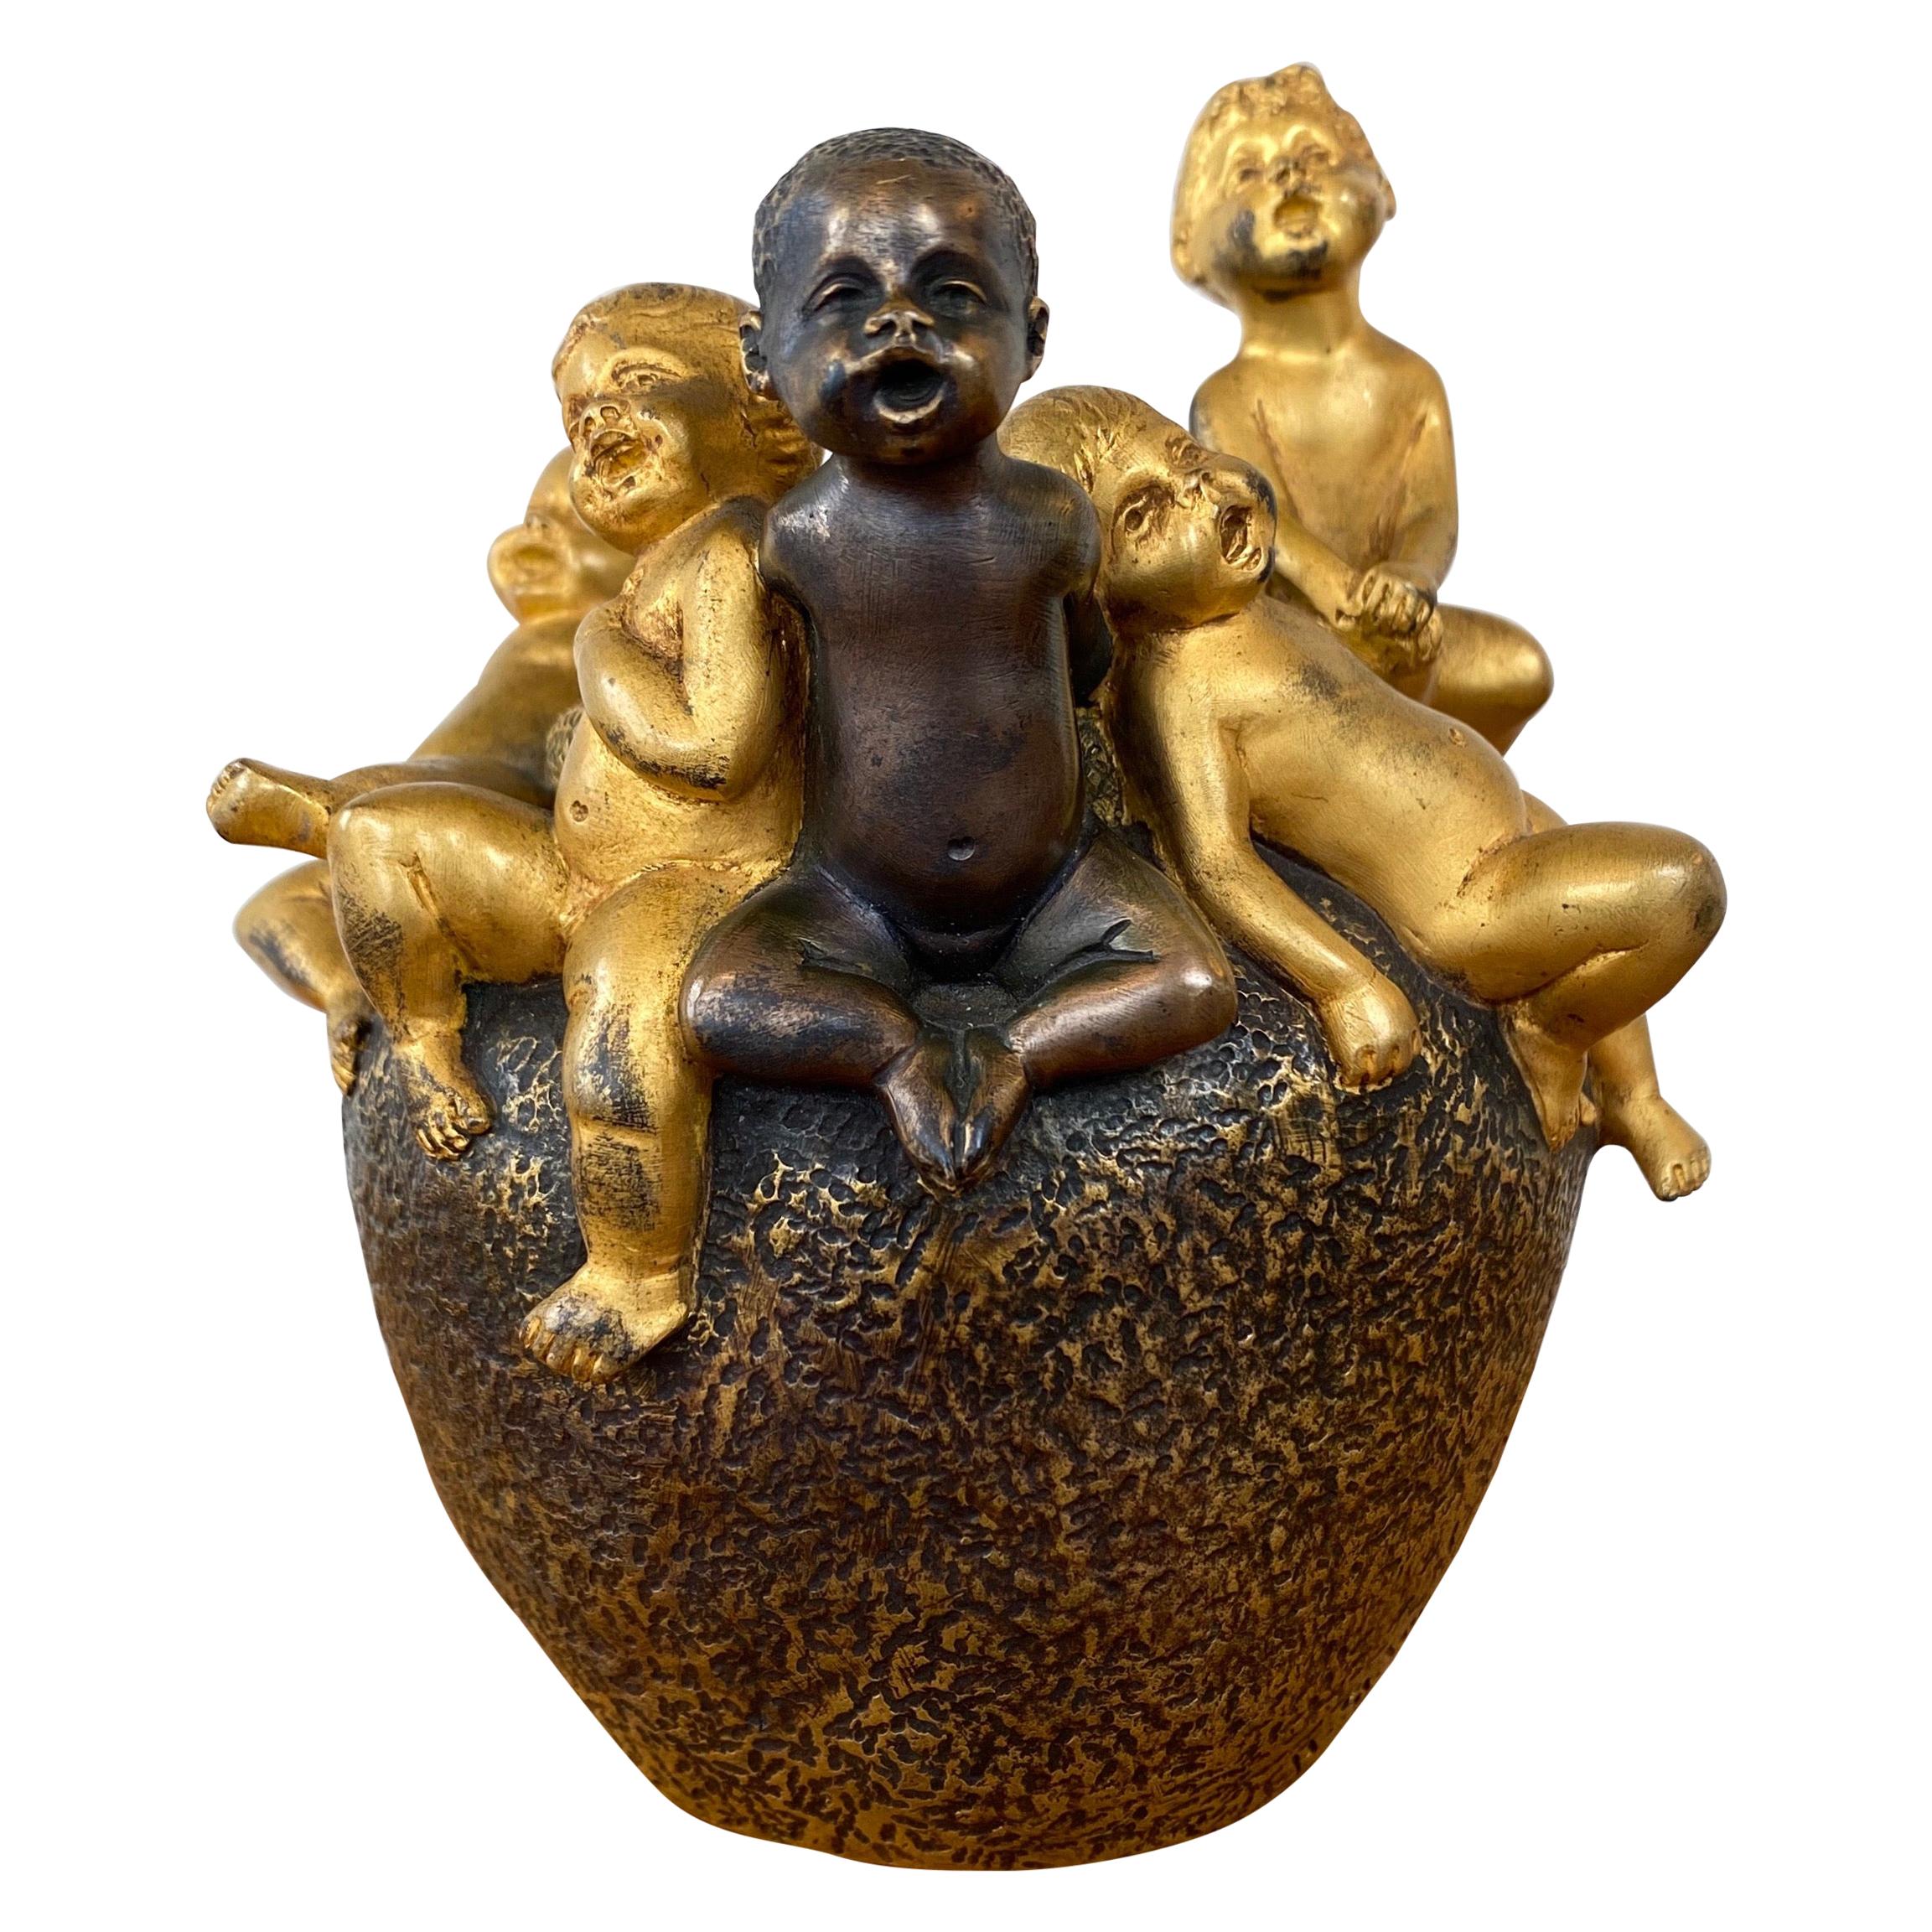 Hans Stoltenberg-Lerche Art Nouveau Putti Form Gilt Bronze Figural Vase, 1900